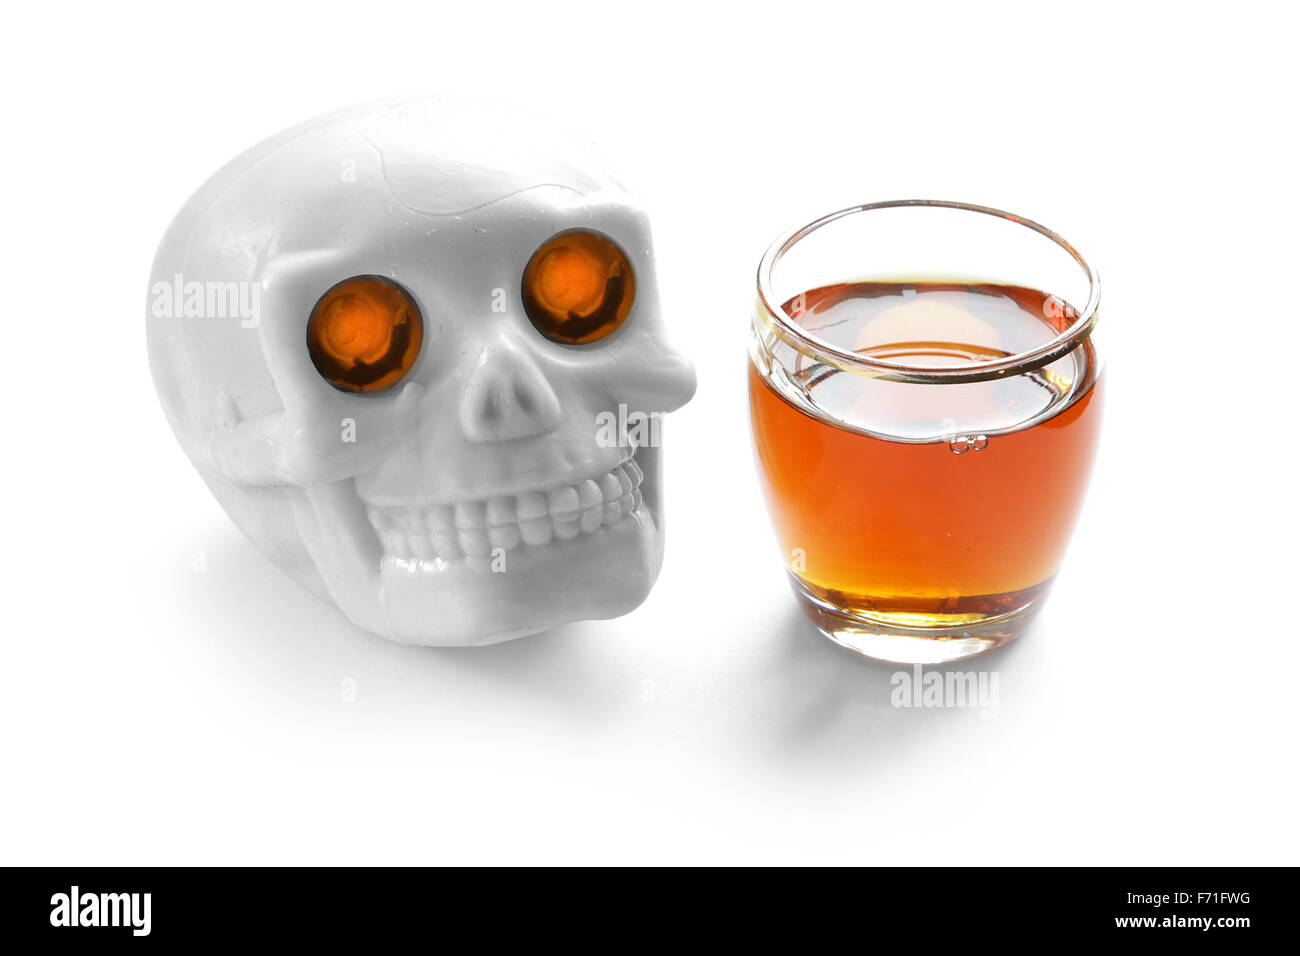 L'alcool tue vintage crâne humain avec brûler les yeux illuminés et whisky tourné sur fond blanc Banque D'Images